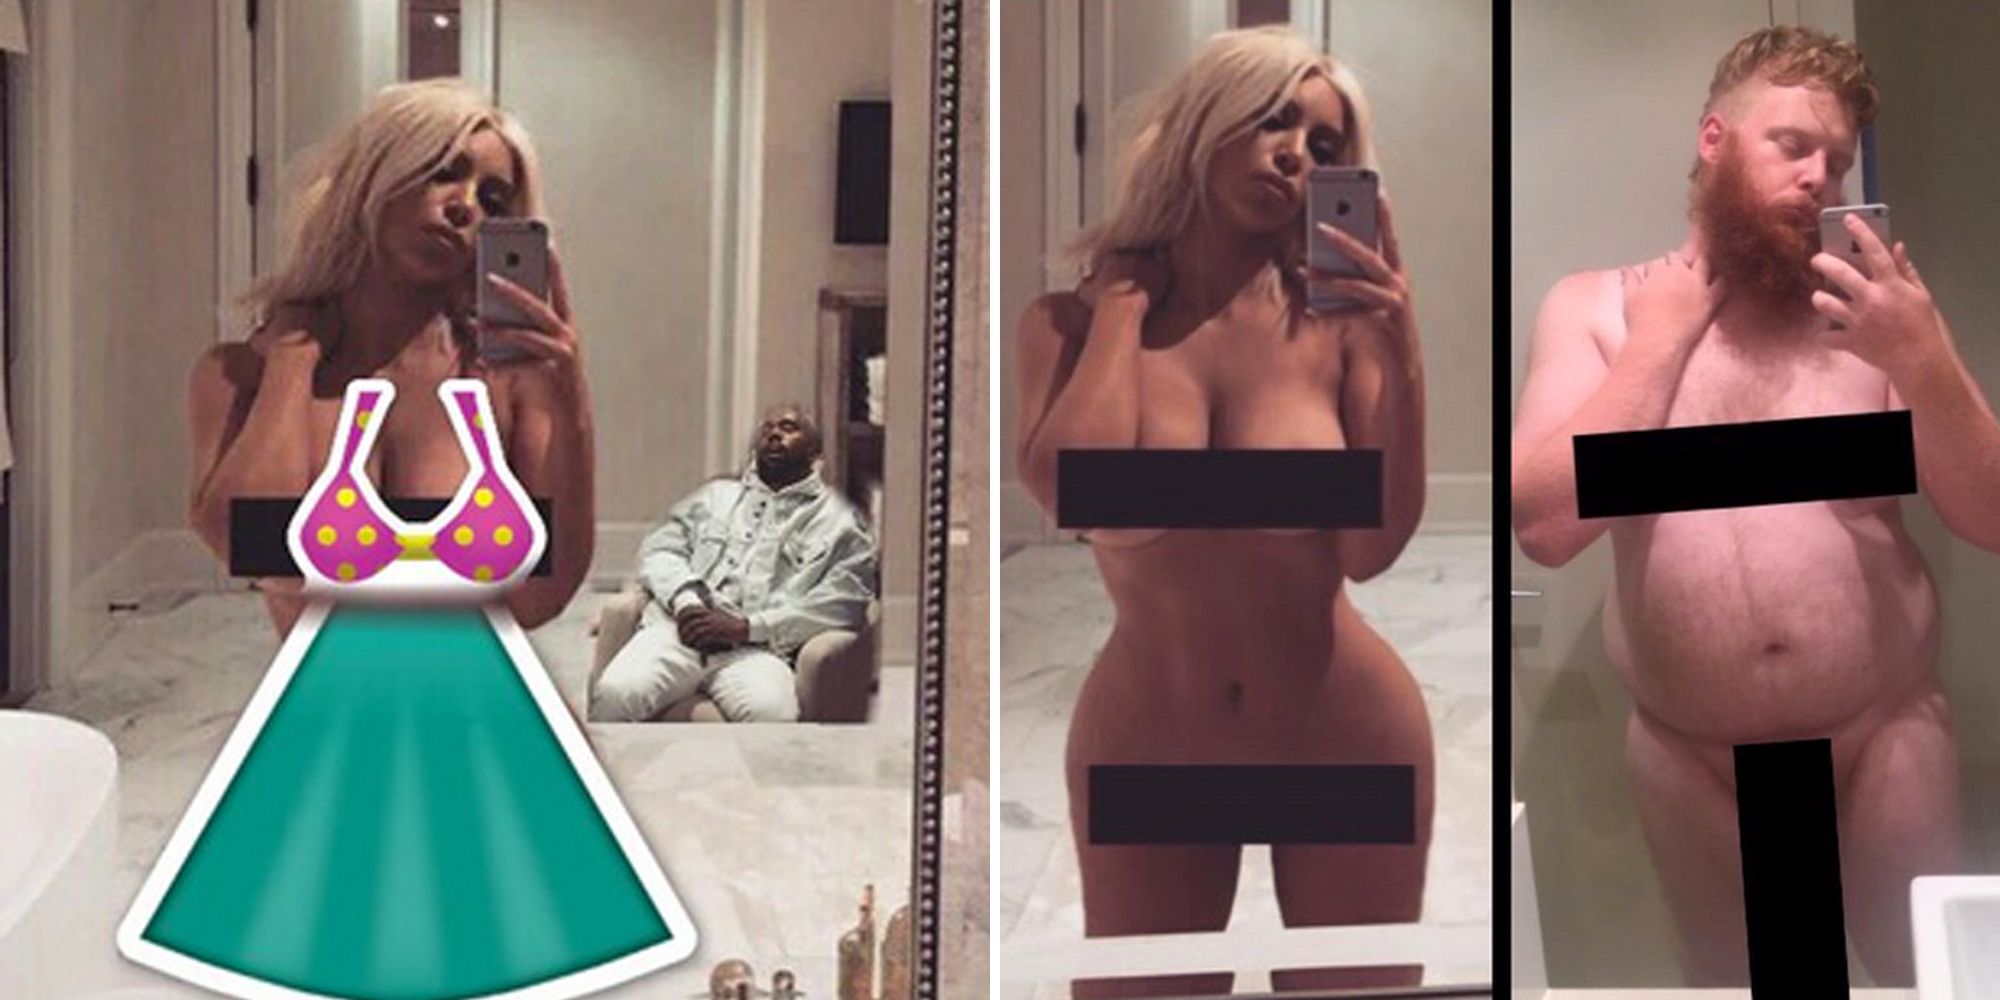 arnold panganiban recommends kim kardashian naked instagram selfie pic